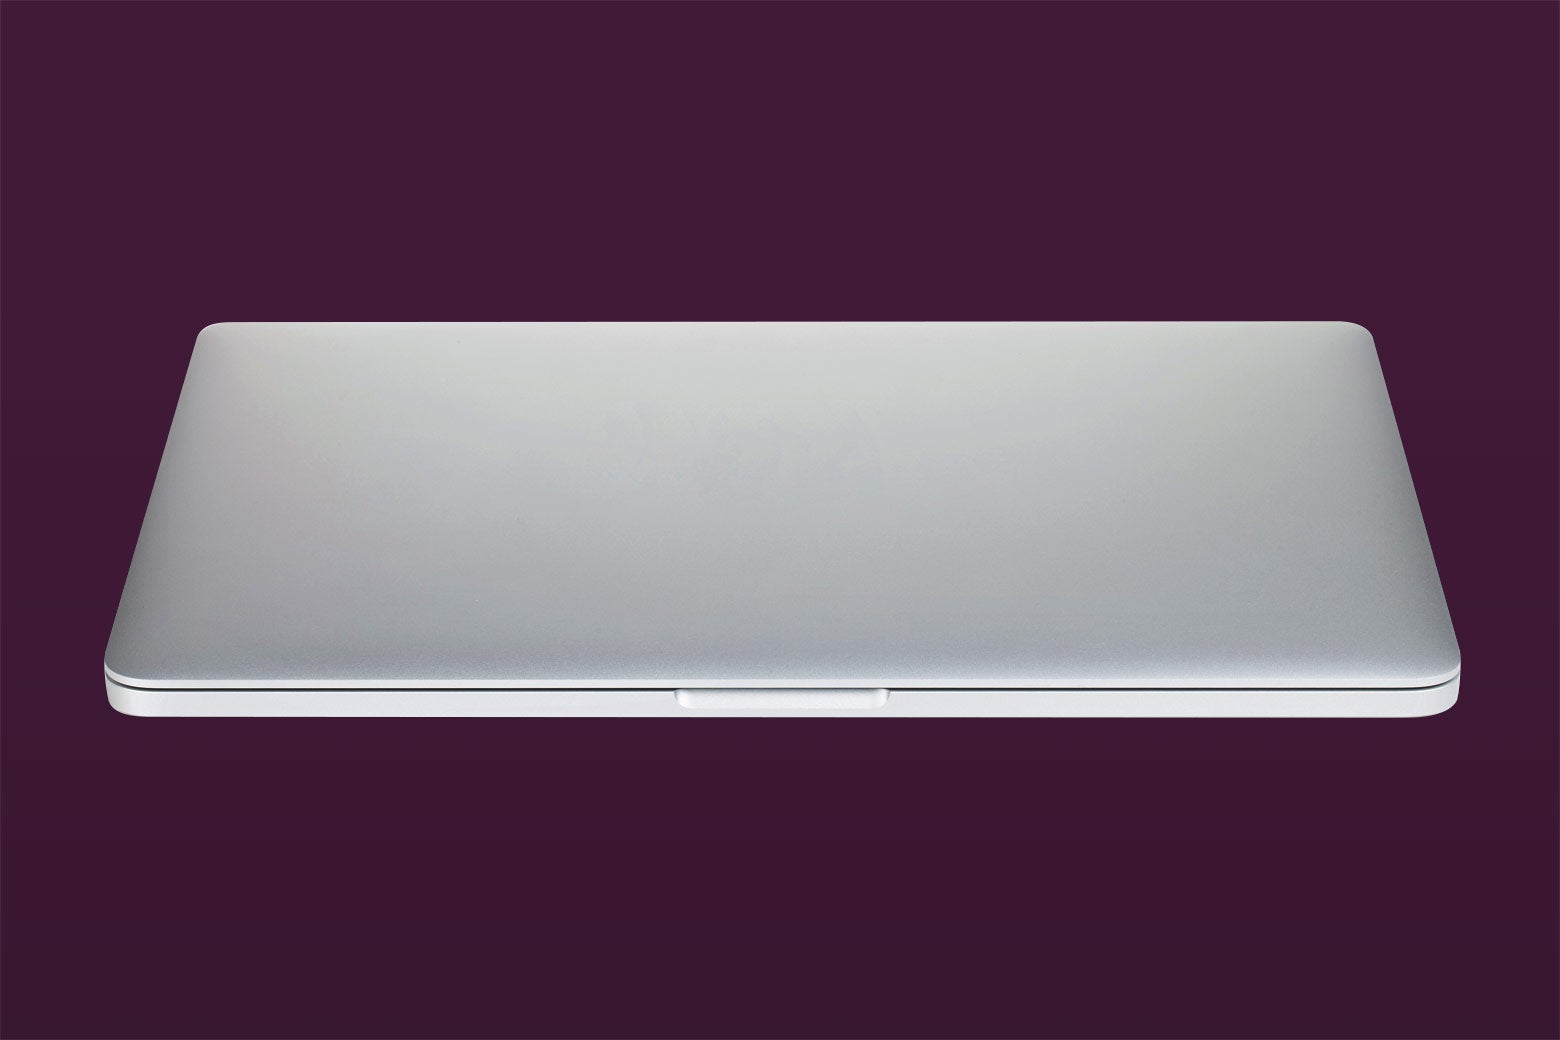 A shut laptop on a dark background.